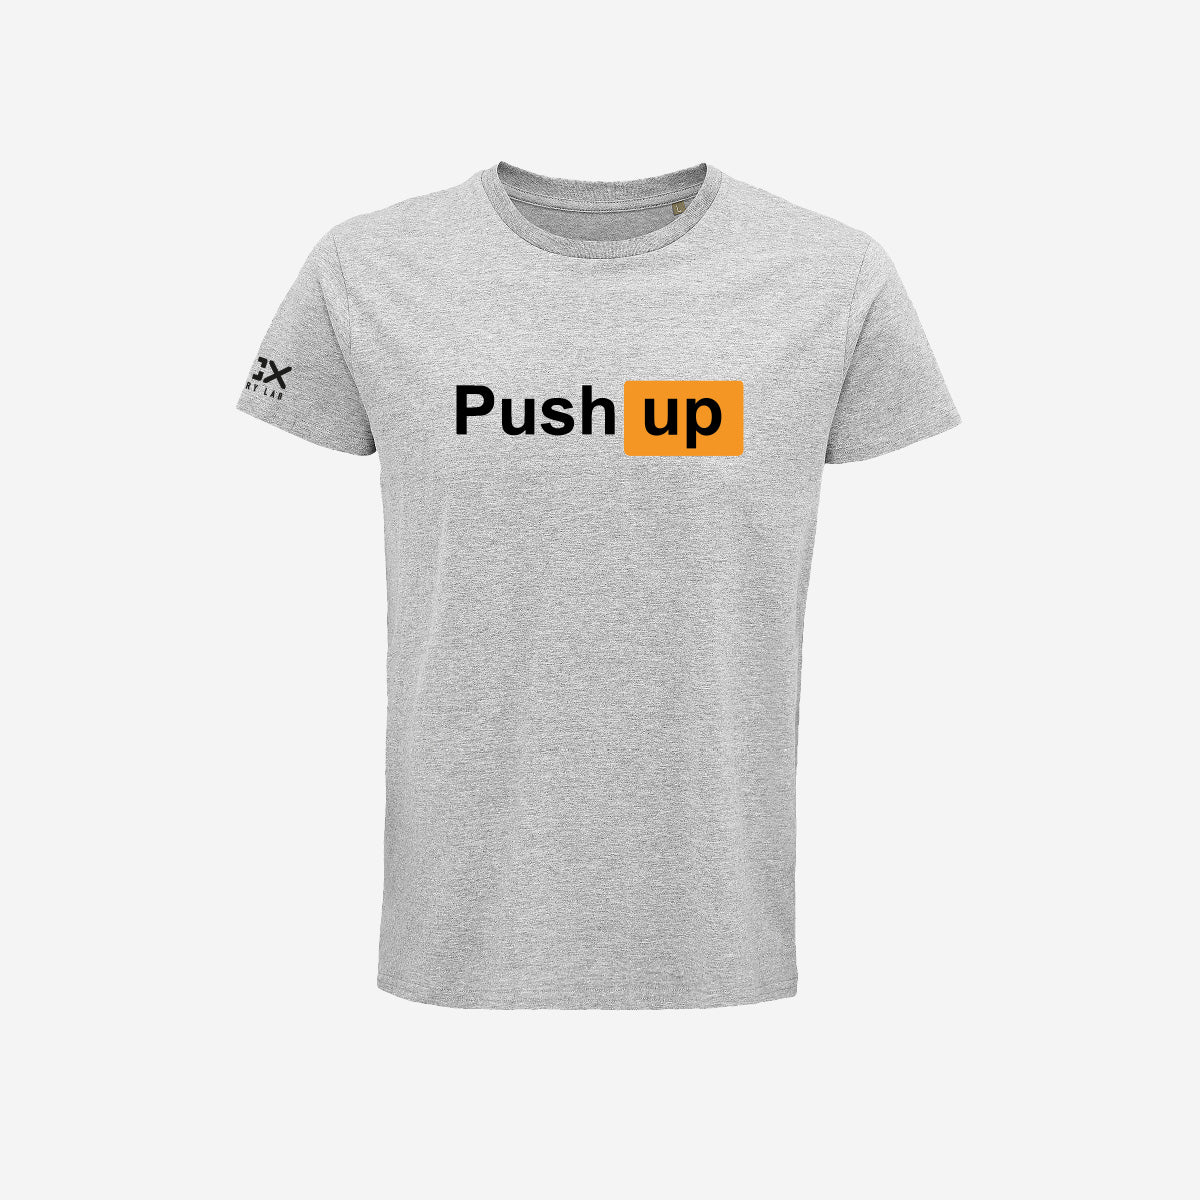 T-shirt Uomo - PushUP